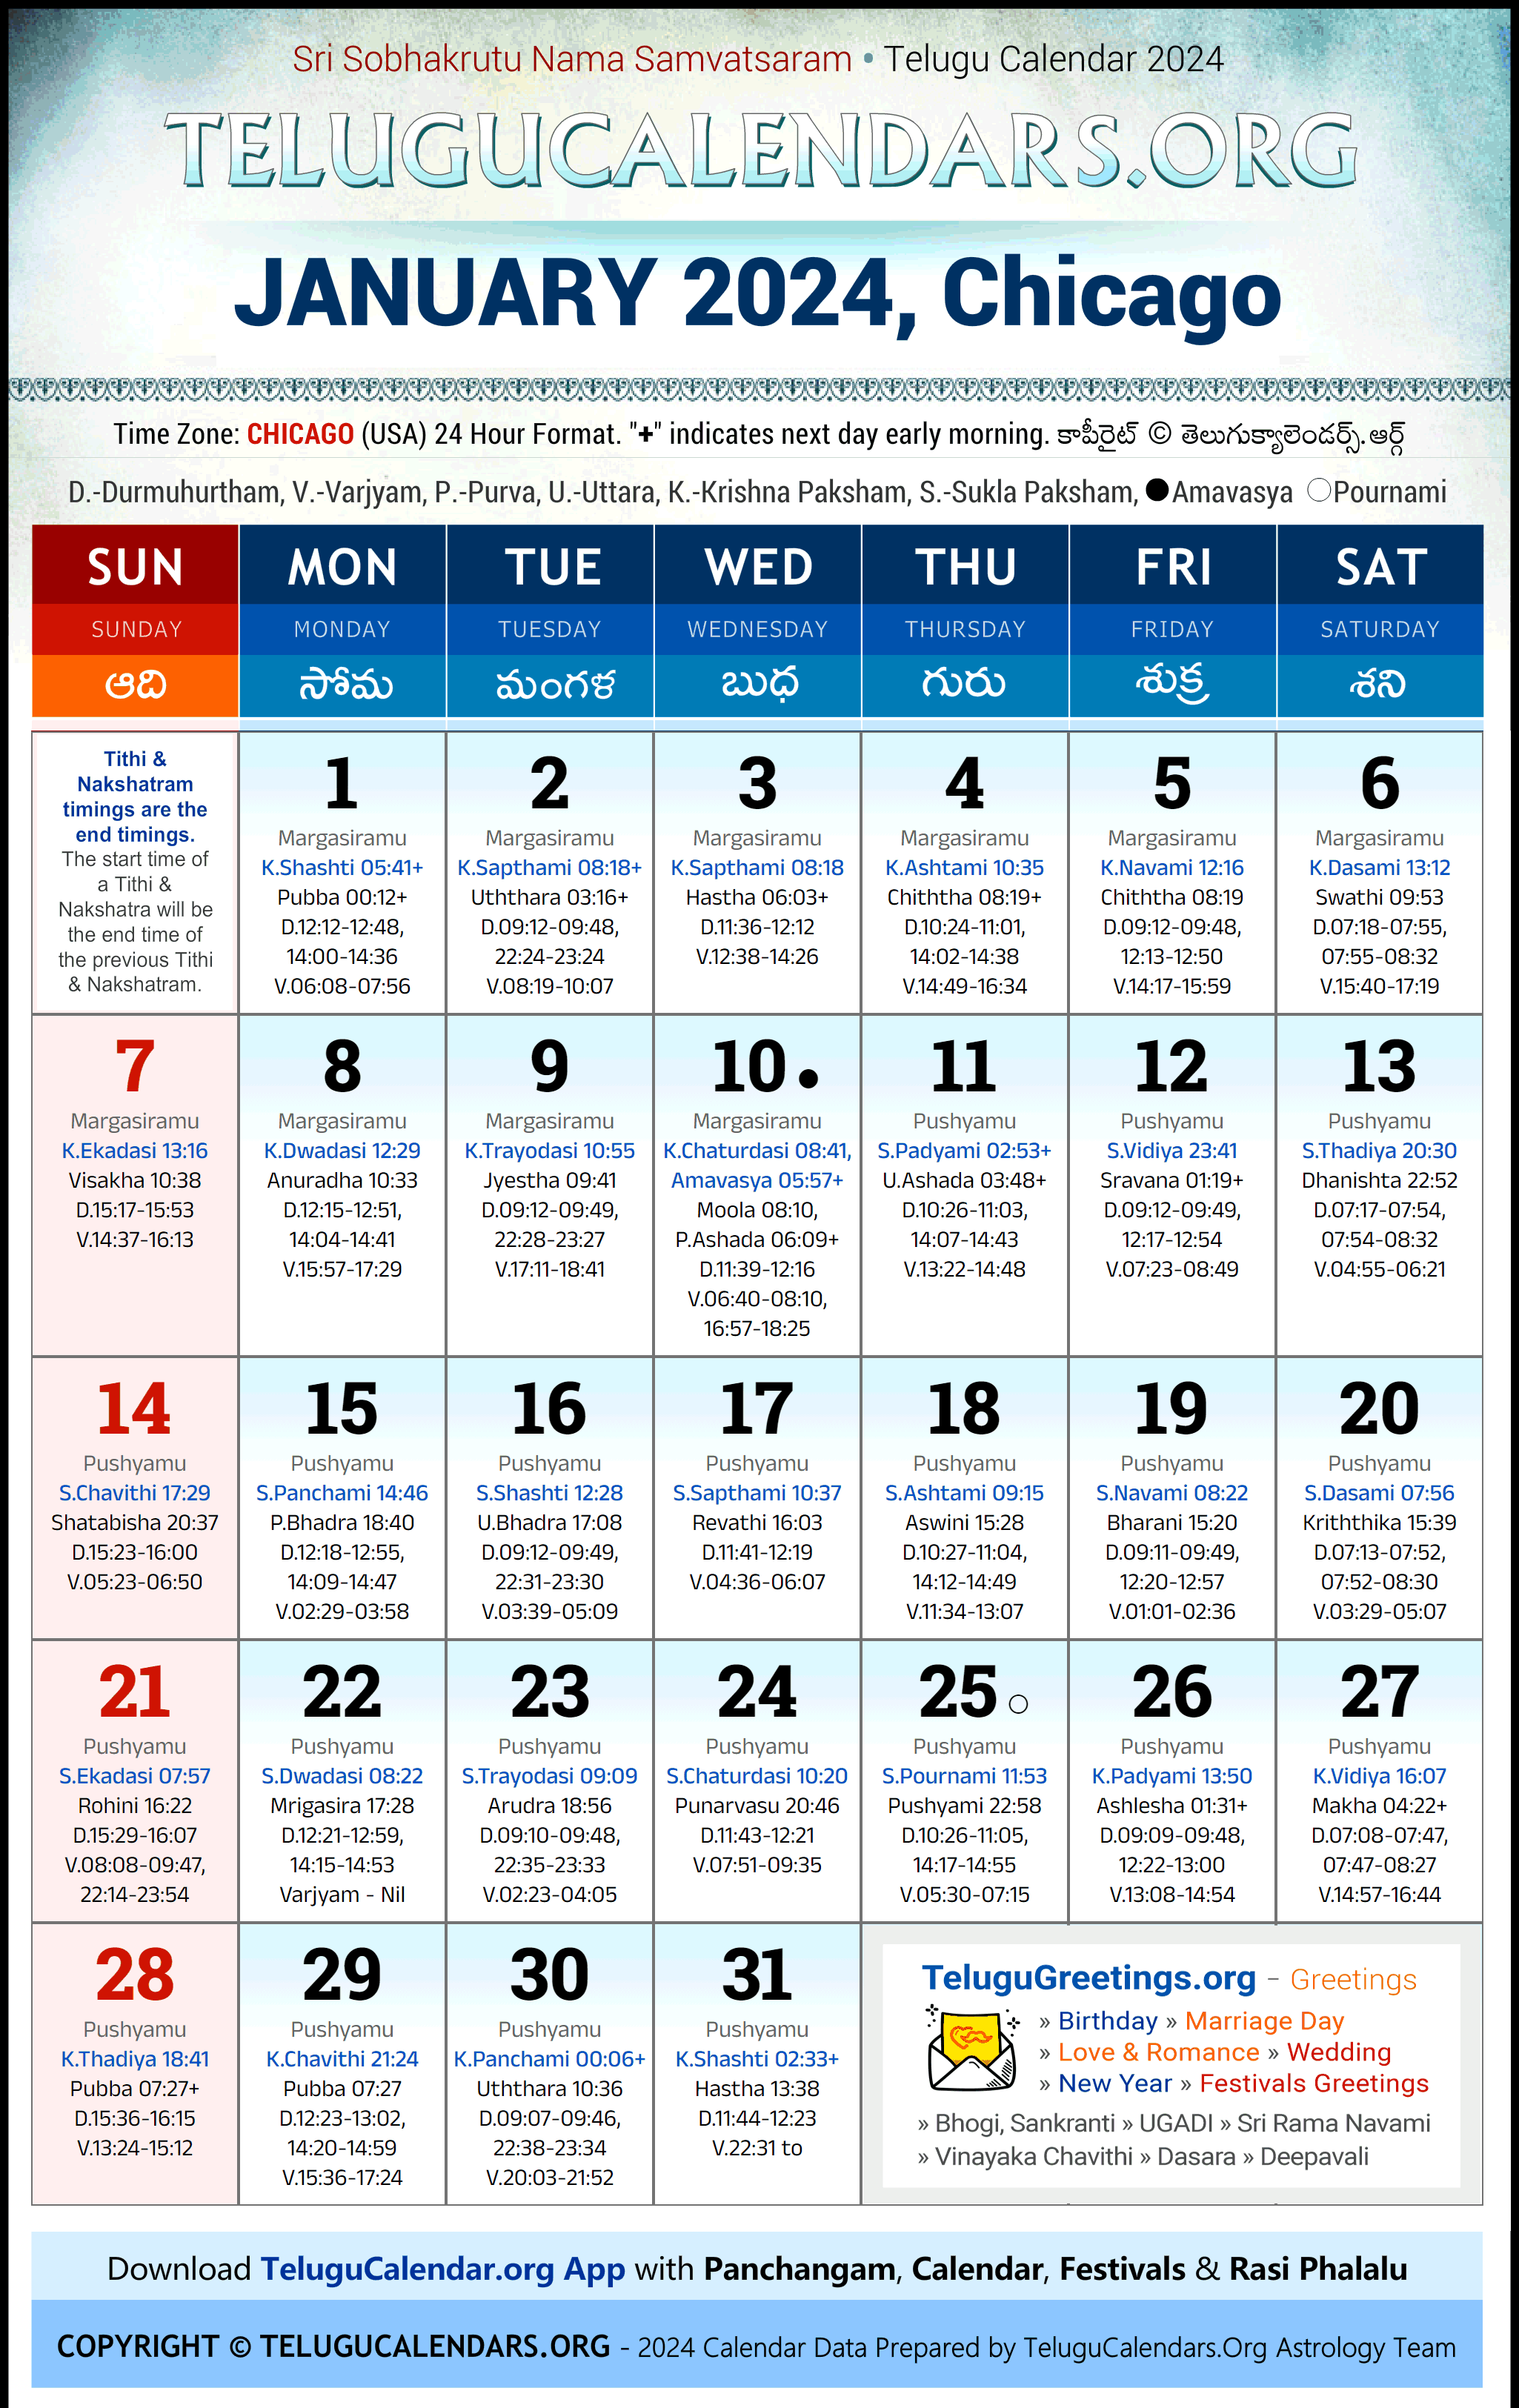 Telugu Calendar 2024 January Festivals for Chicago